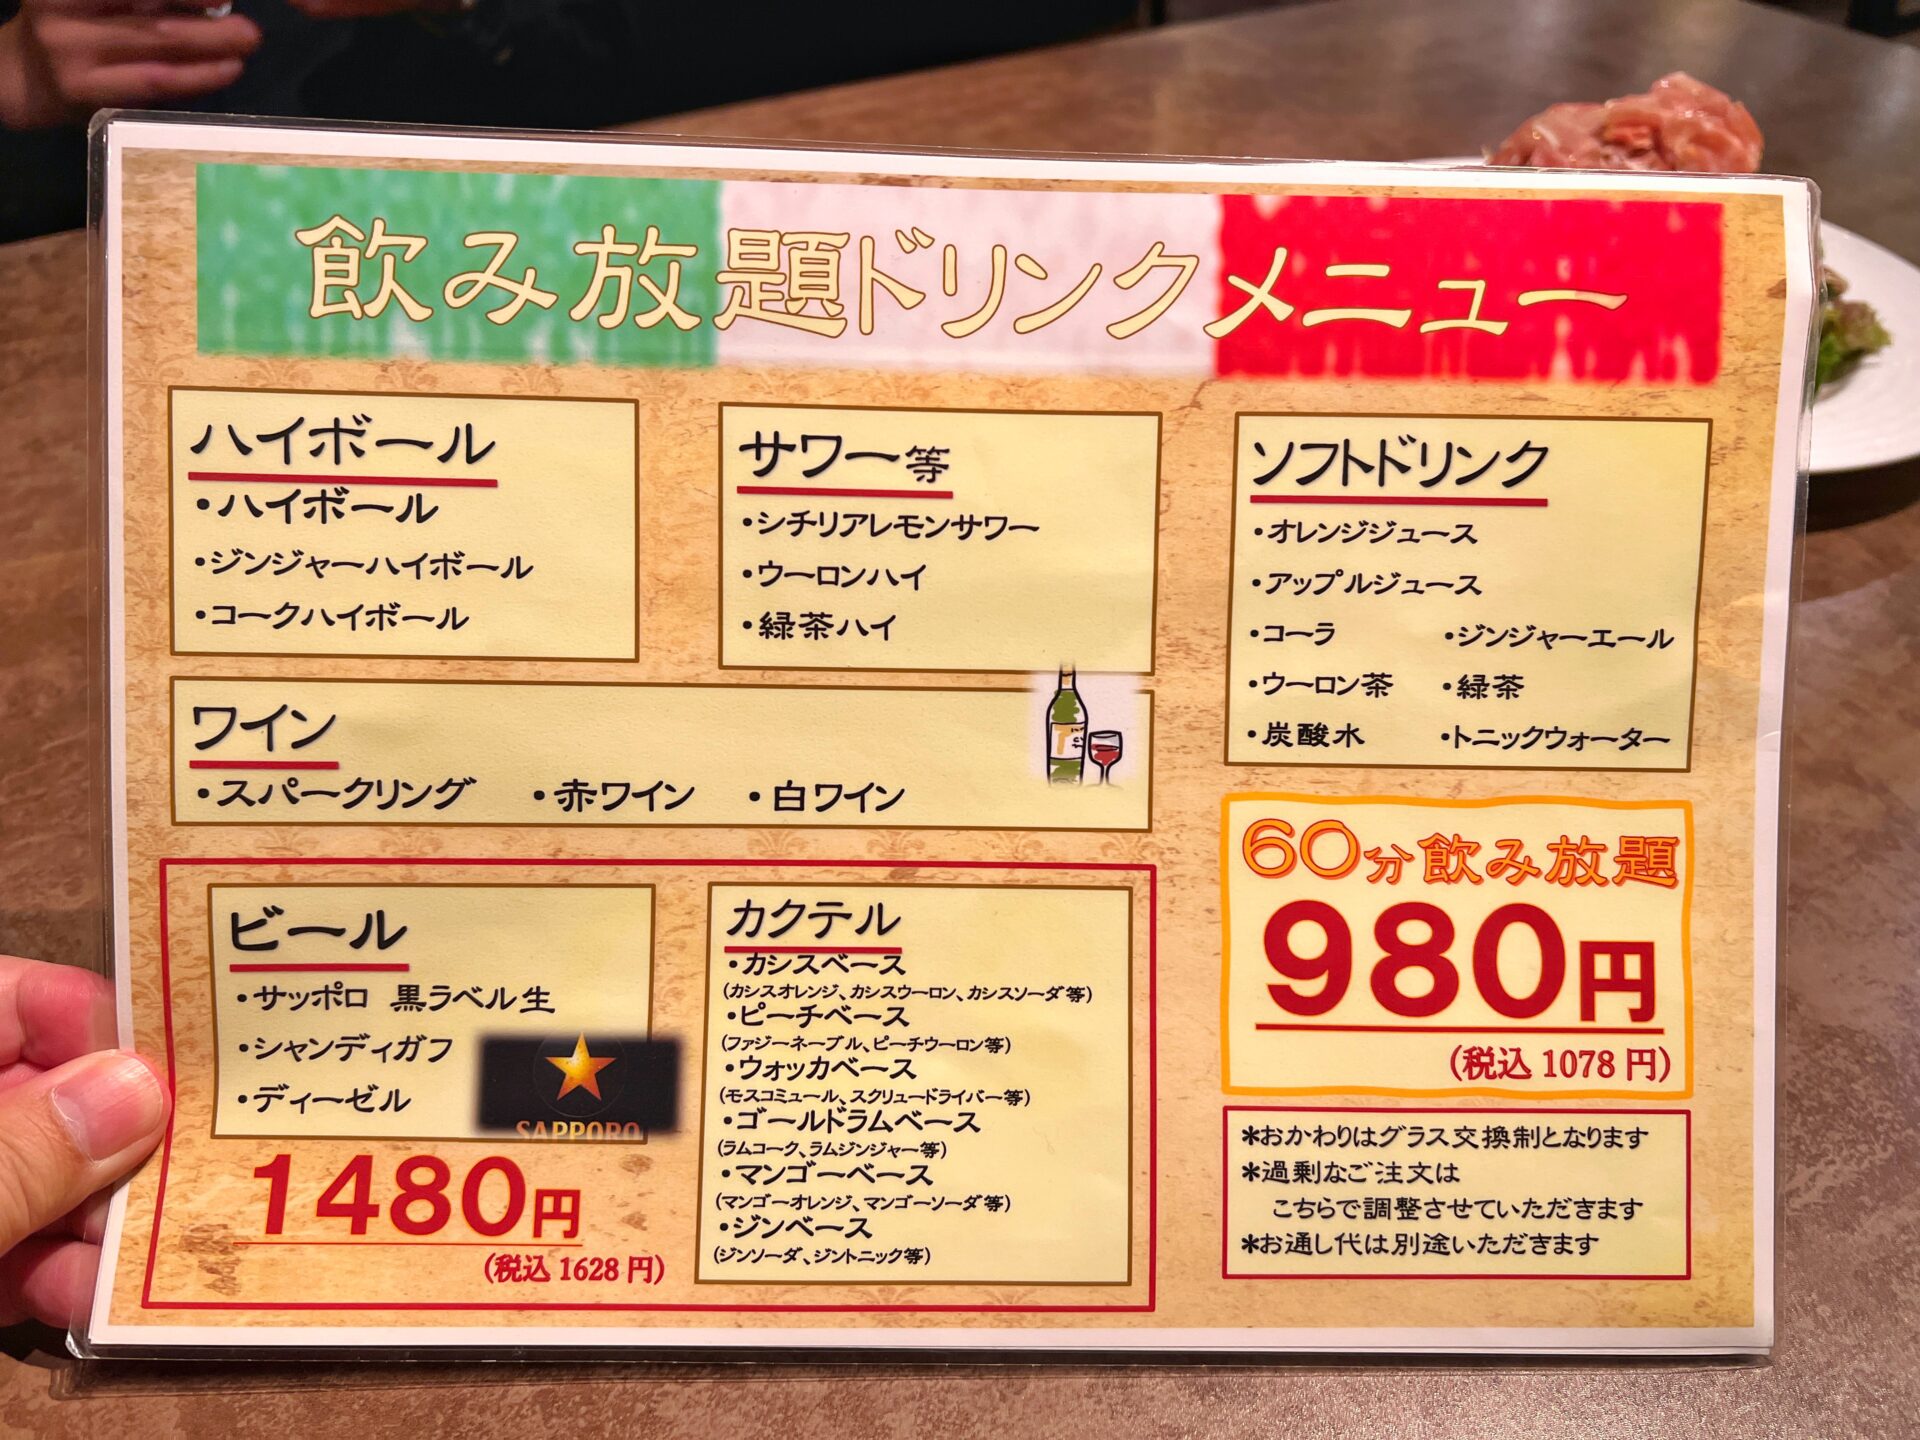 越谷市「イタリア居酒屋カチャトラ」1人1000円で注文できる前菜盛り合わせが豪華すぎるお店